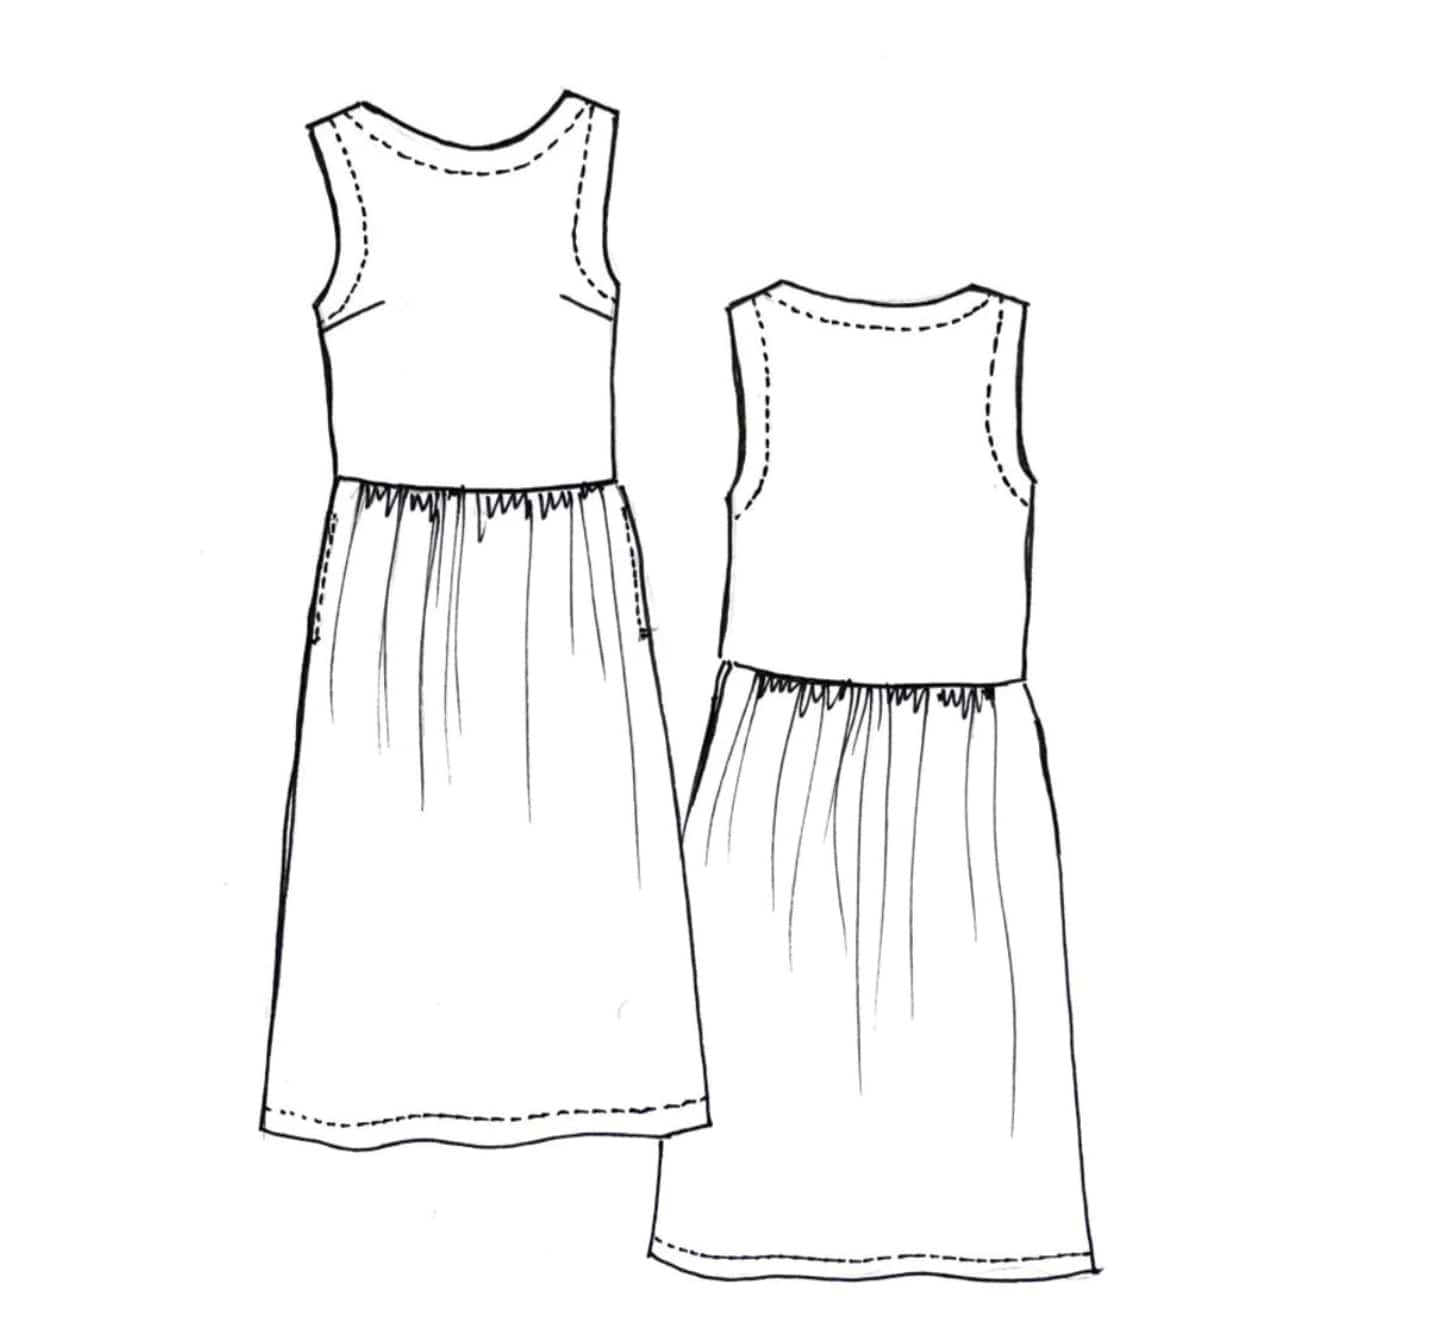 Tessuti Patterns: Felicia Pinafore Dress